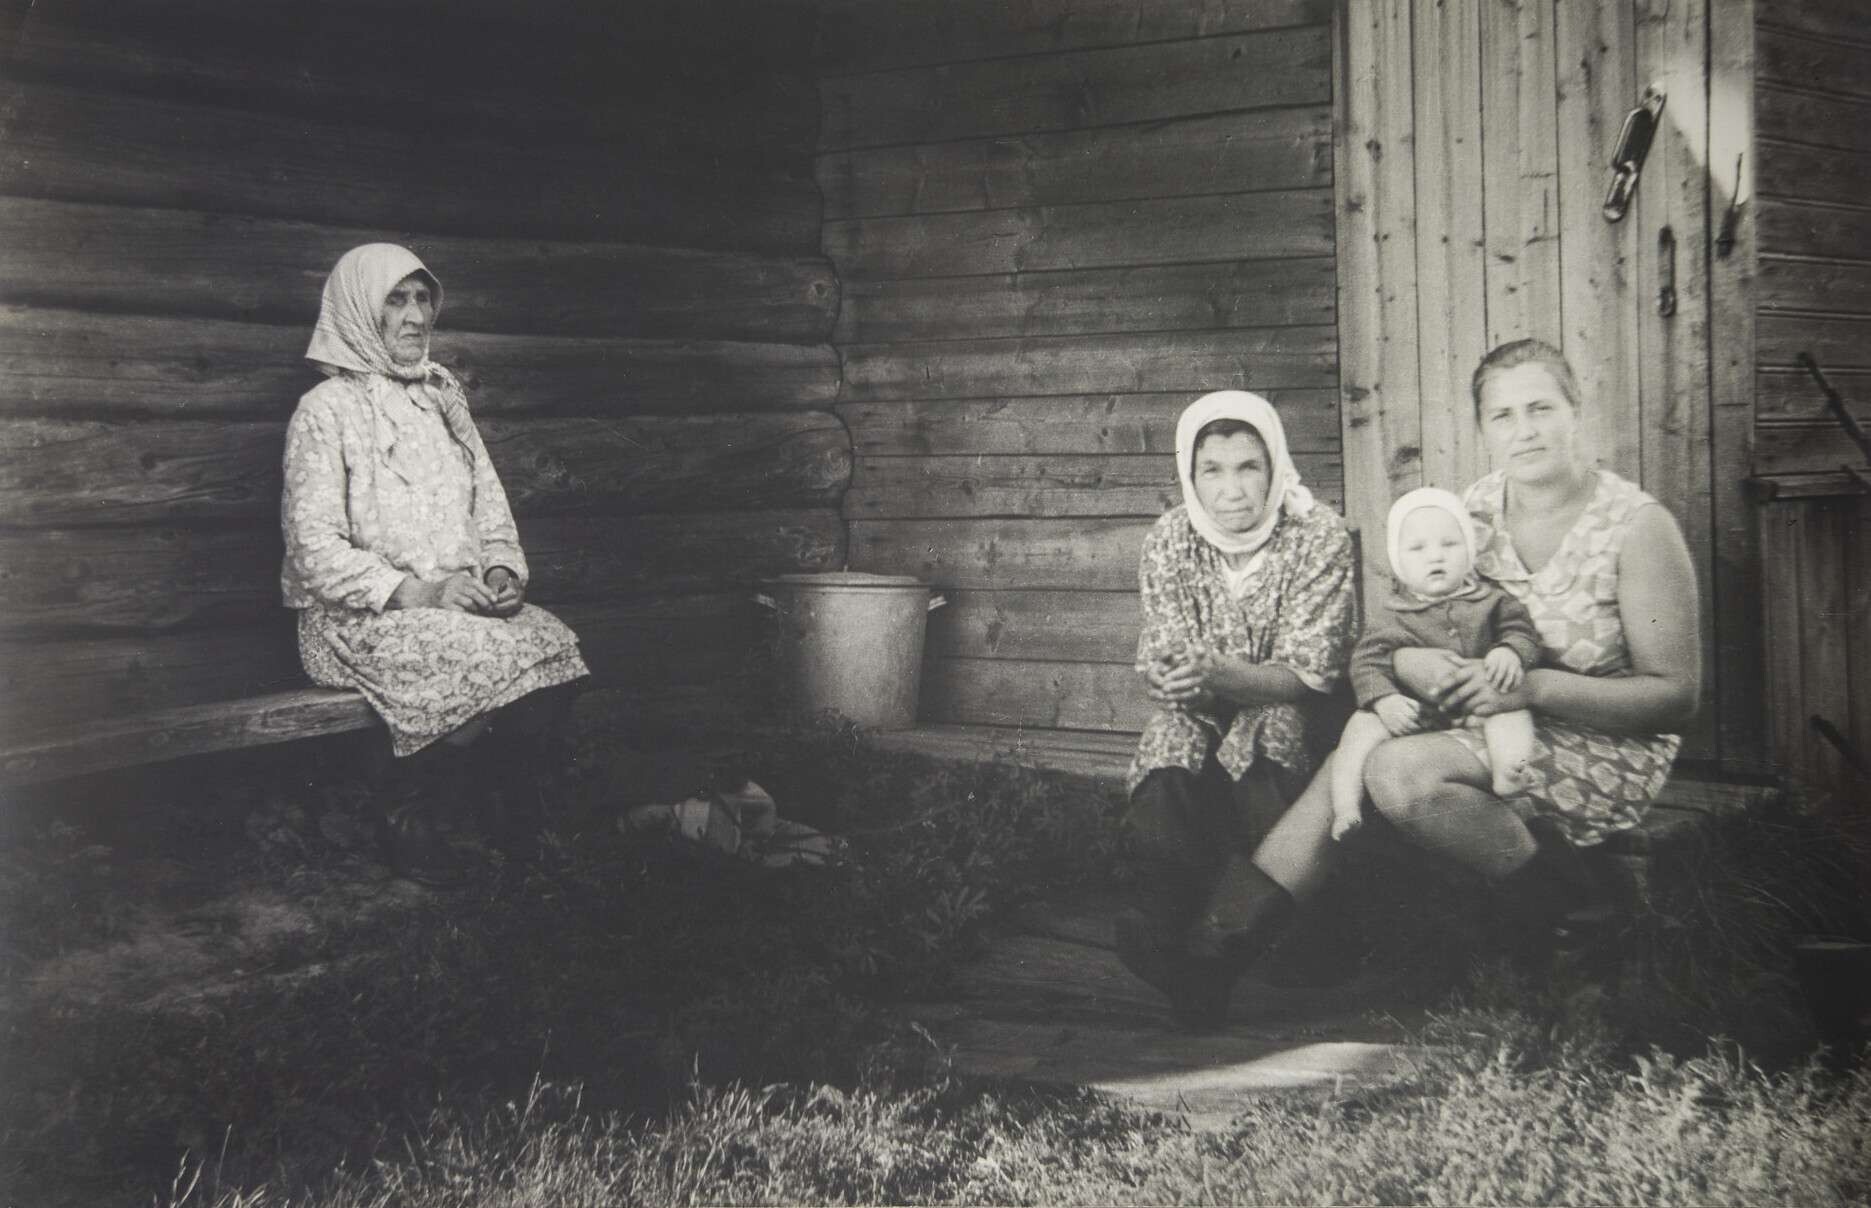 Три матери, 1980-е. Фотограф Борис Михалевкин